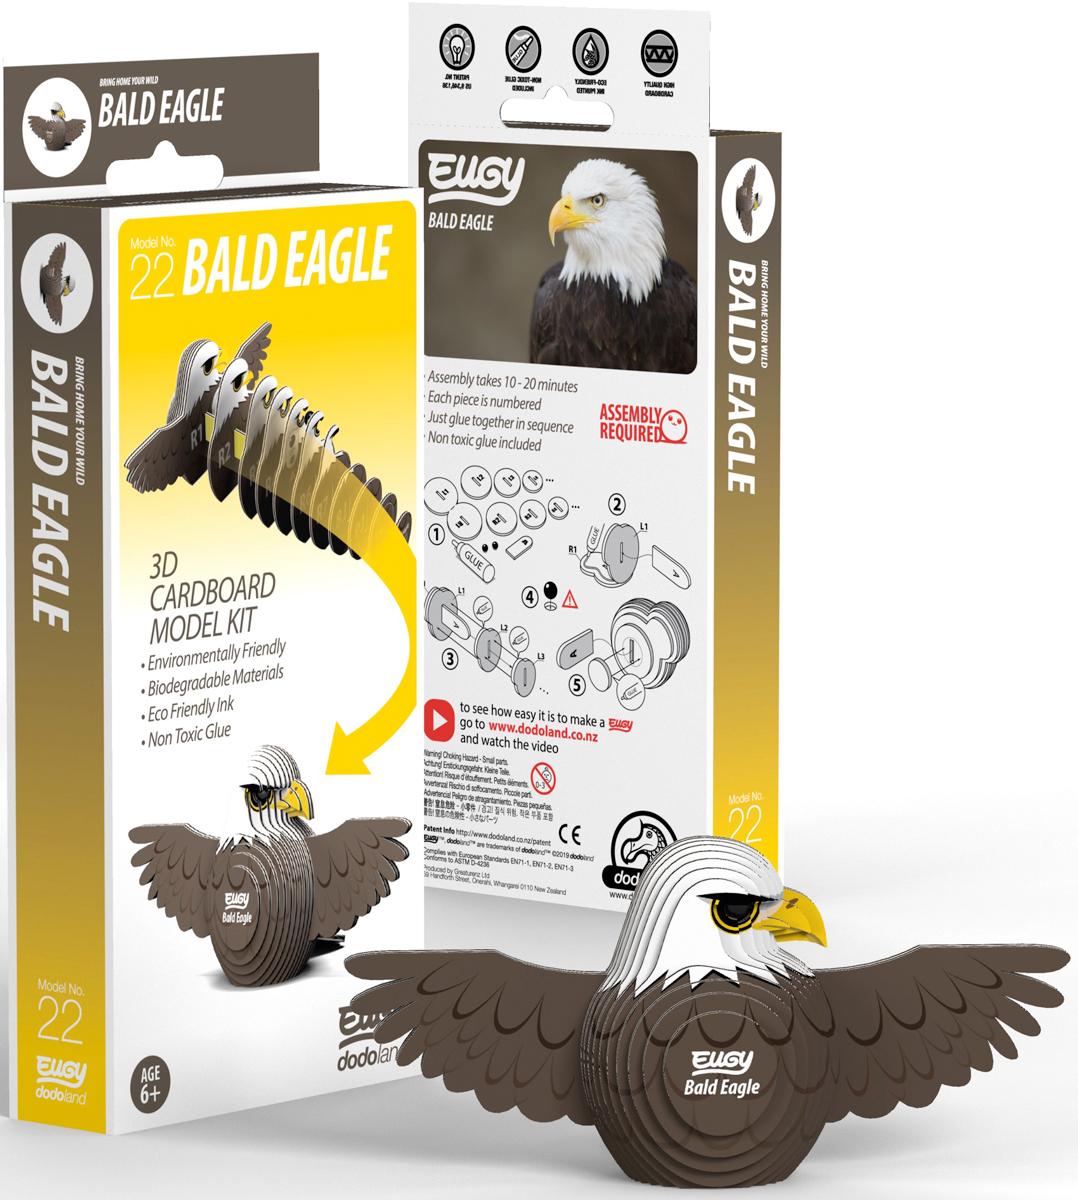 Bald Eagle Eugy